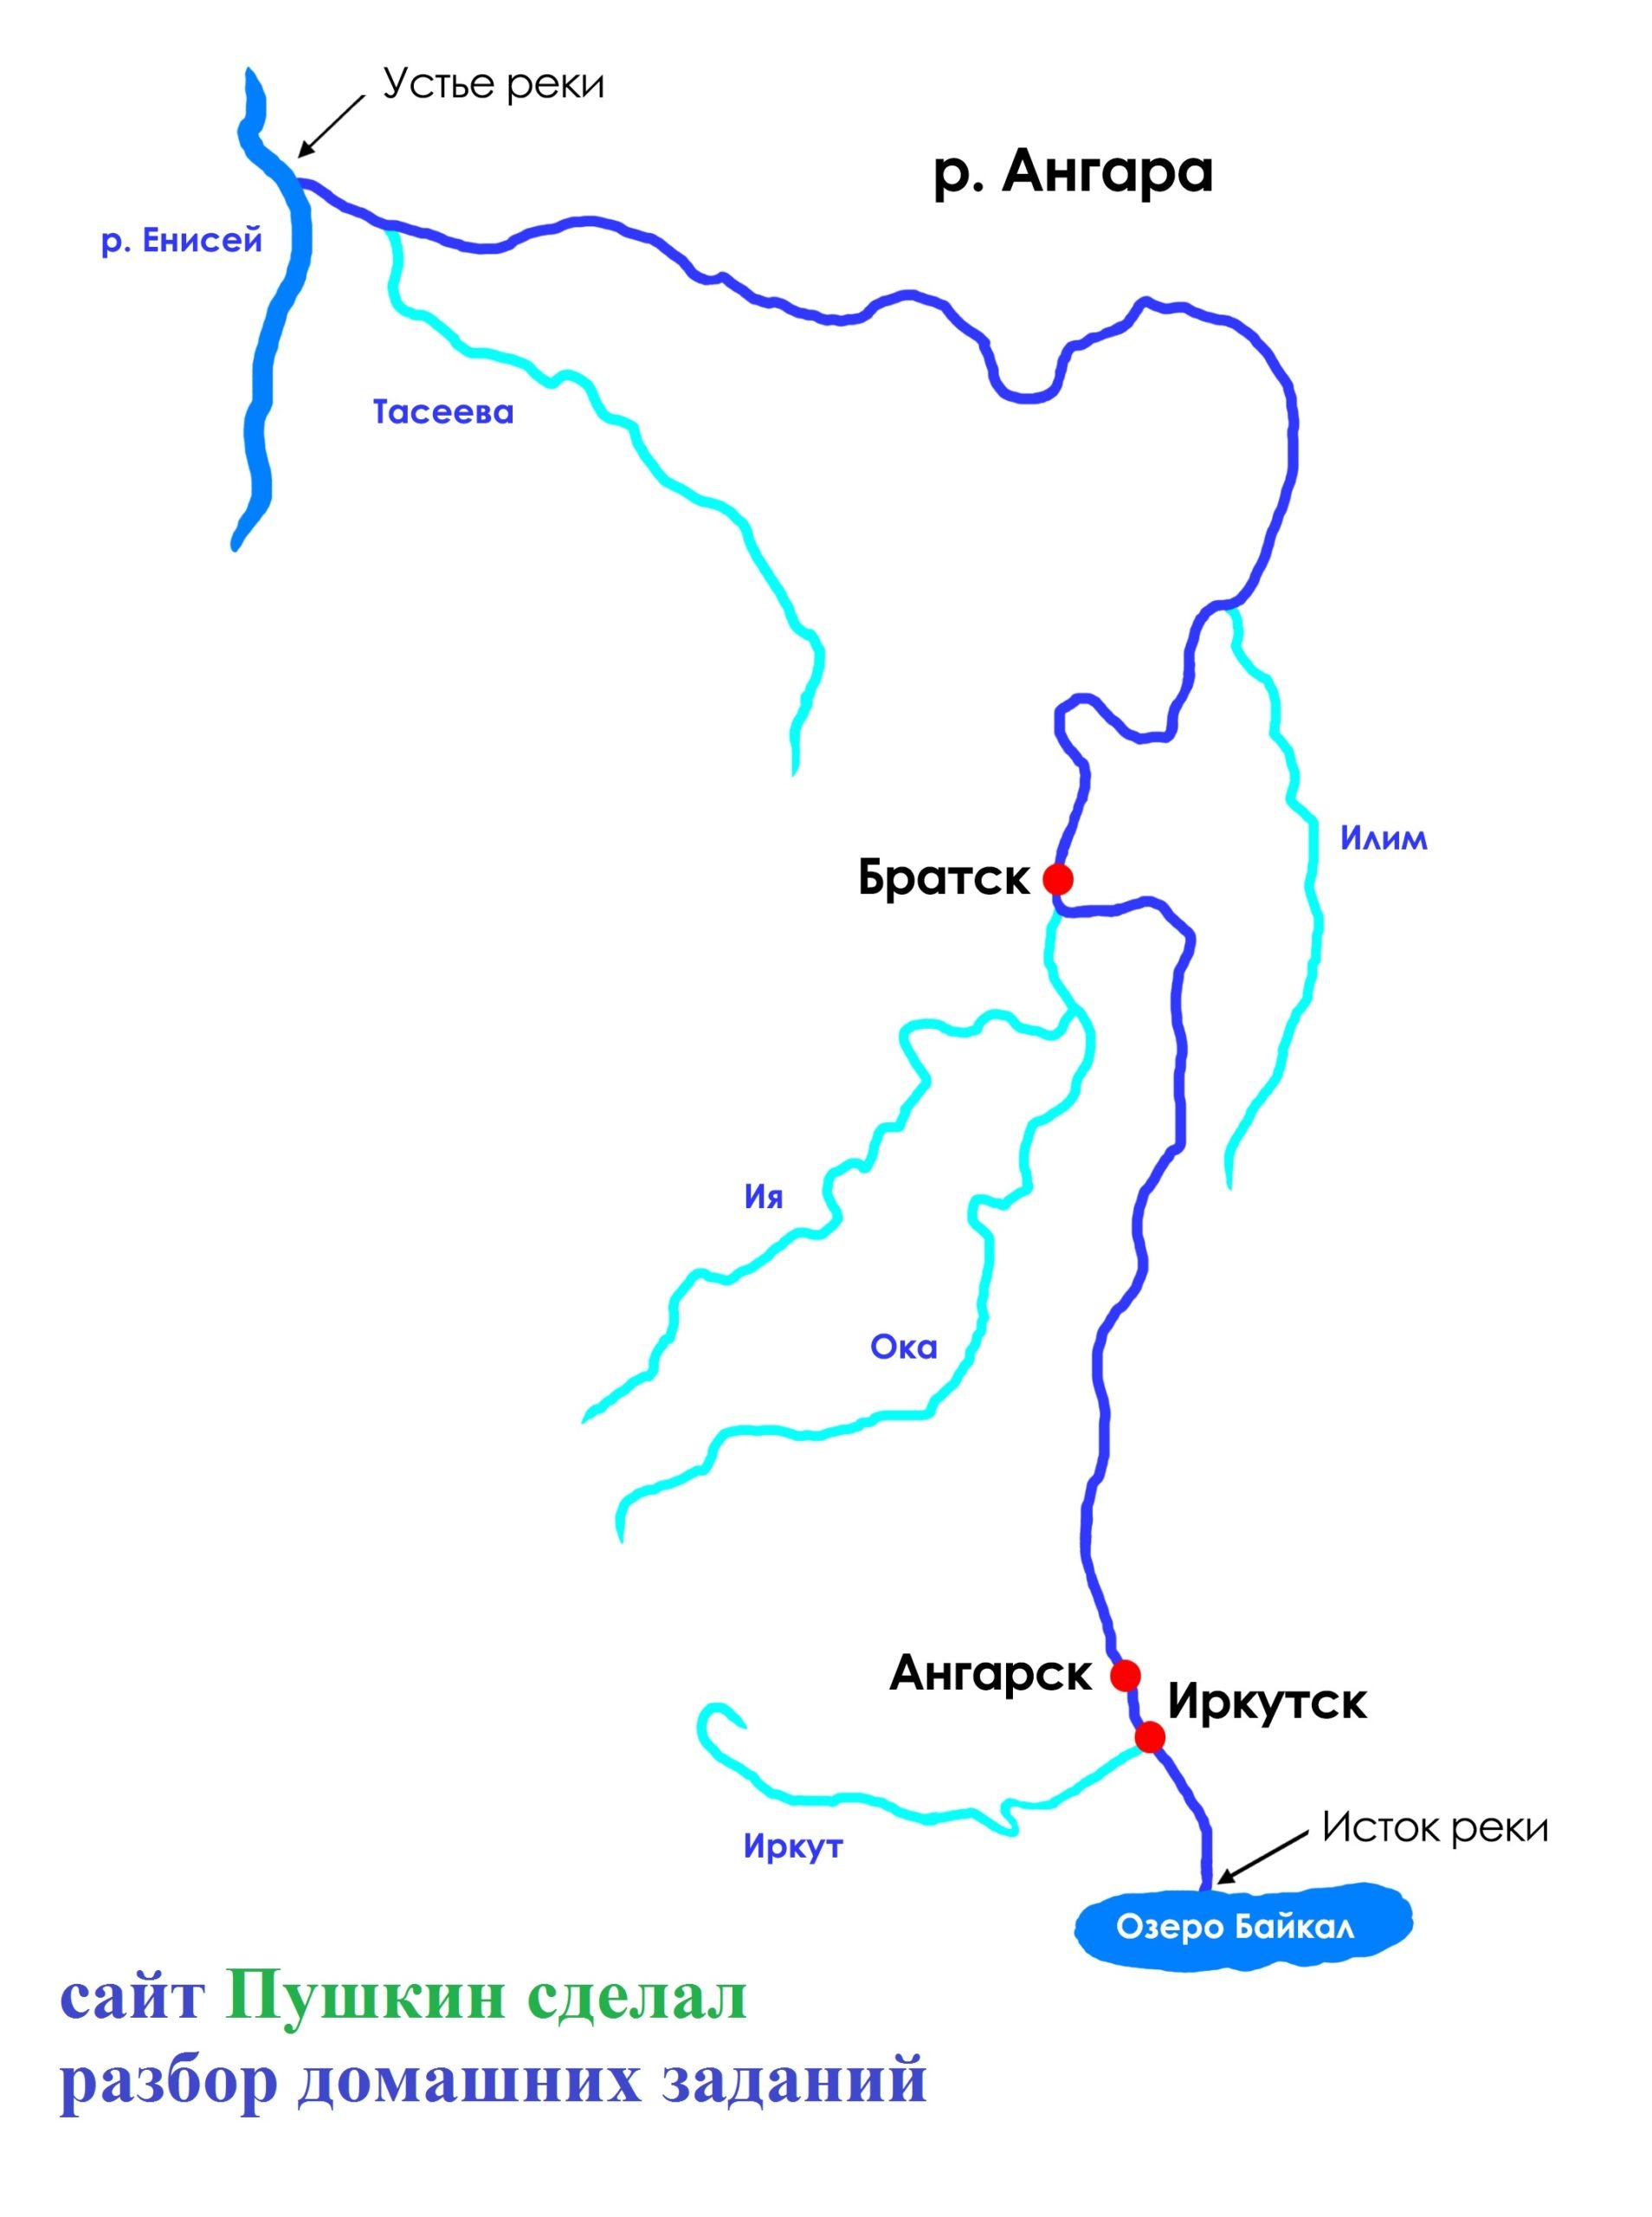 Крупные притоки реки ангары. Схема реки Ангара. Куда впадает река Енисей. Схема Байкал, Ангара,Енисей. Устье реки Ангара.